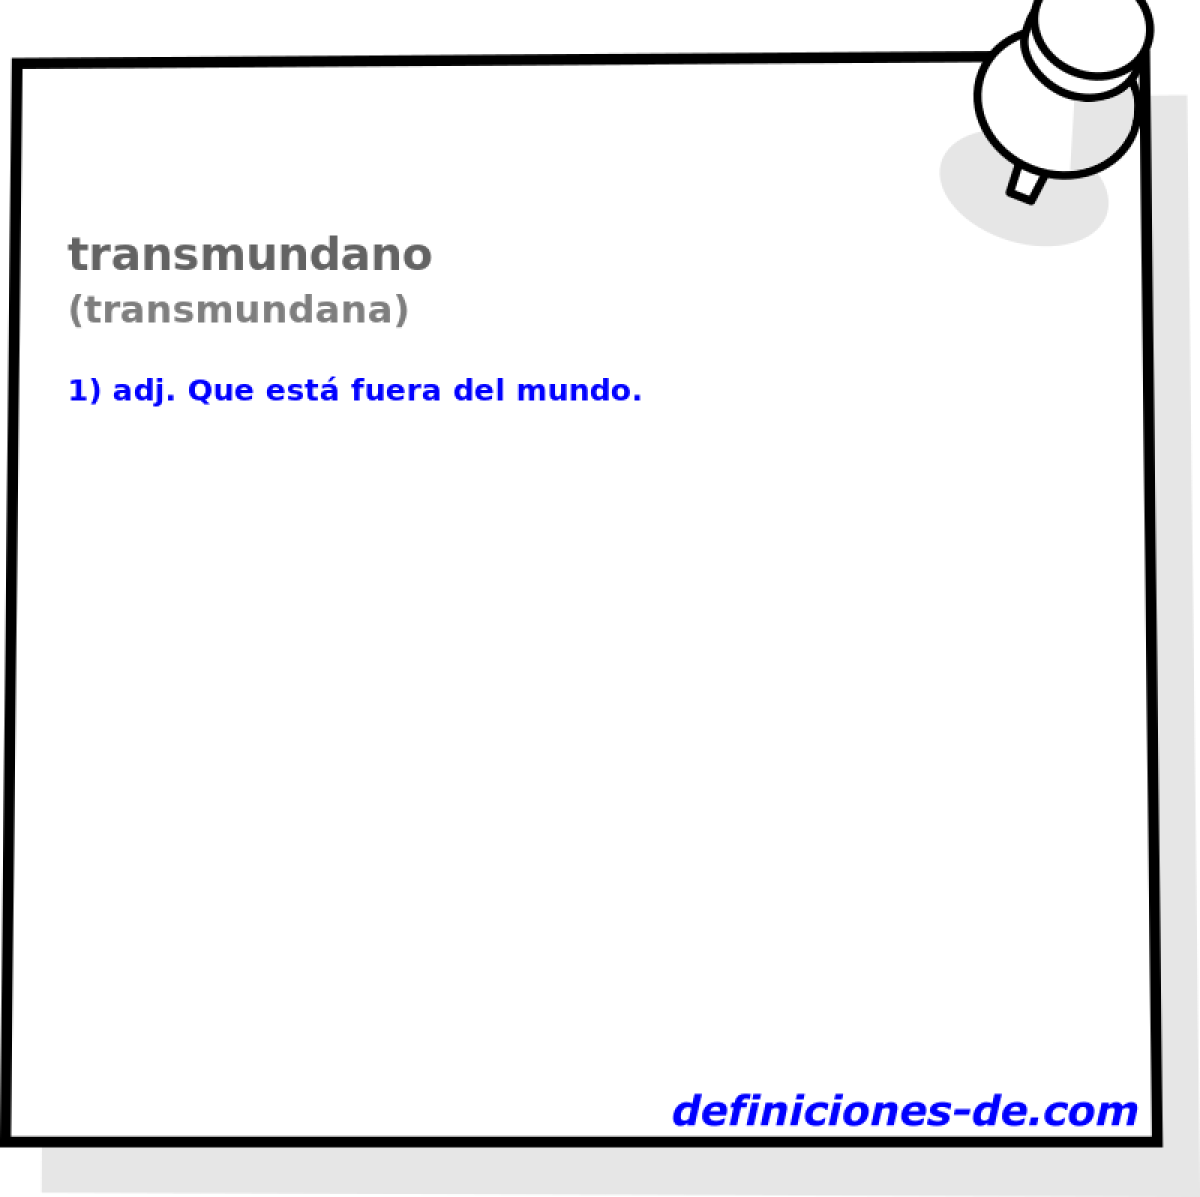 transmundano (transmundana)